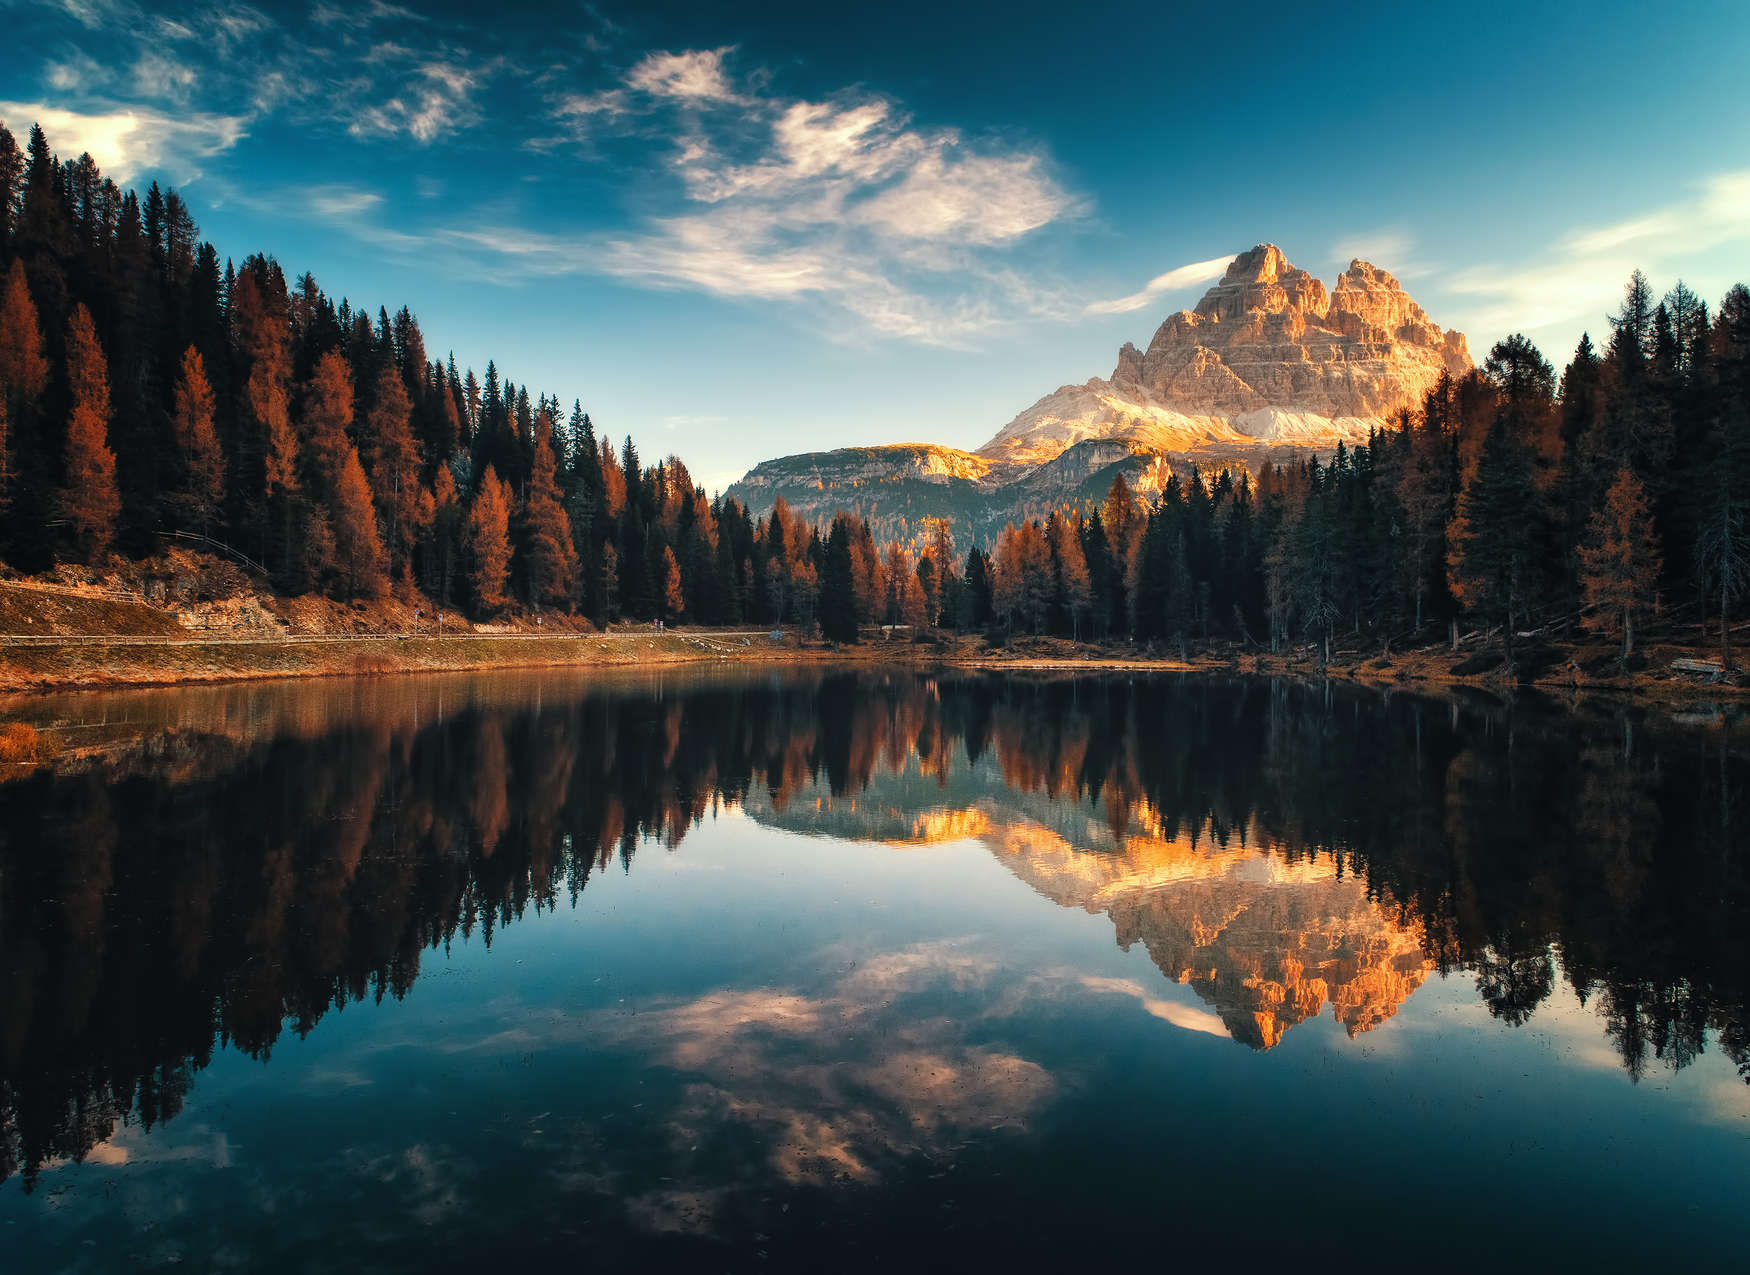             Fototapete mit Berglandschaft und See – Grün, Blau, Bunt
        